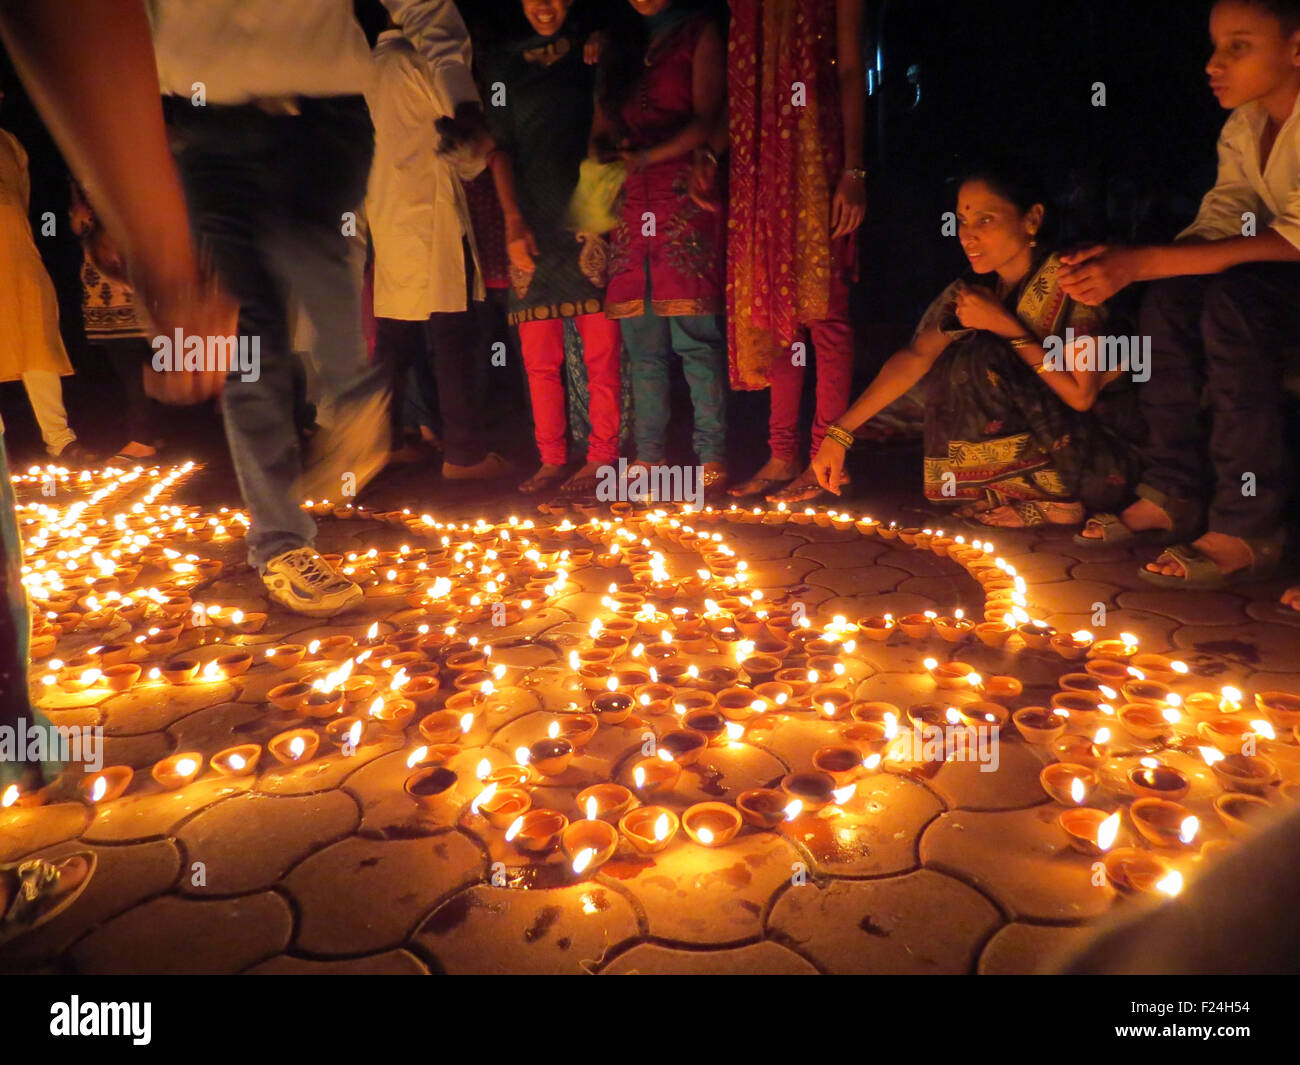 Leute aus Indien Leuchten traditionelle irdenen Lampen anlässlich Diwali Festival feiern. Stockfoto